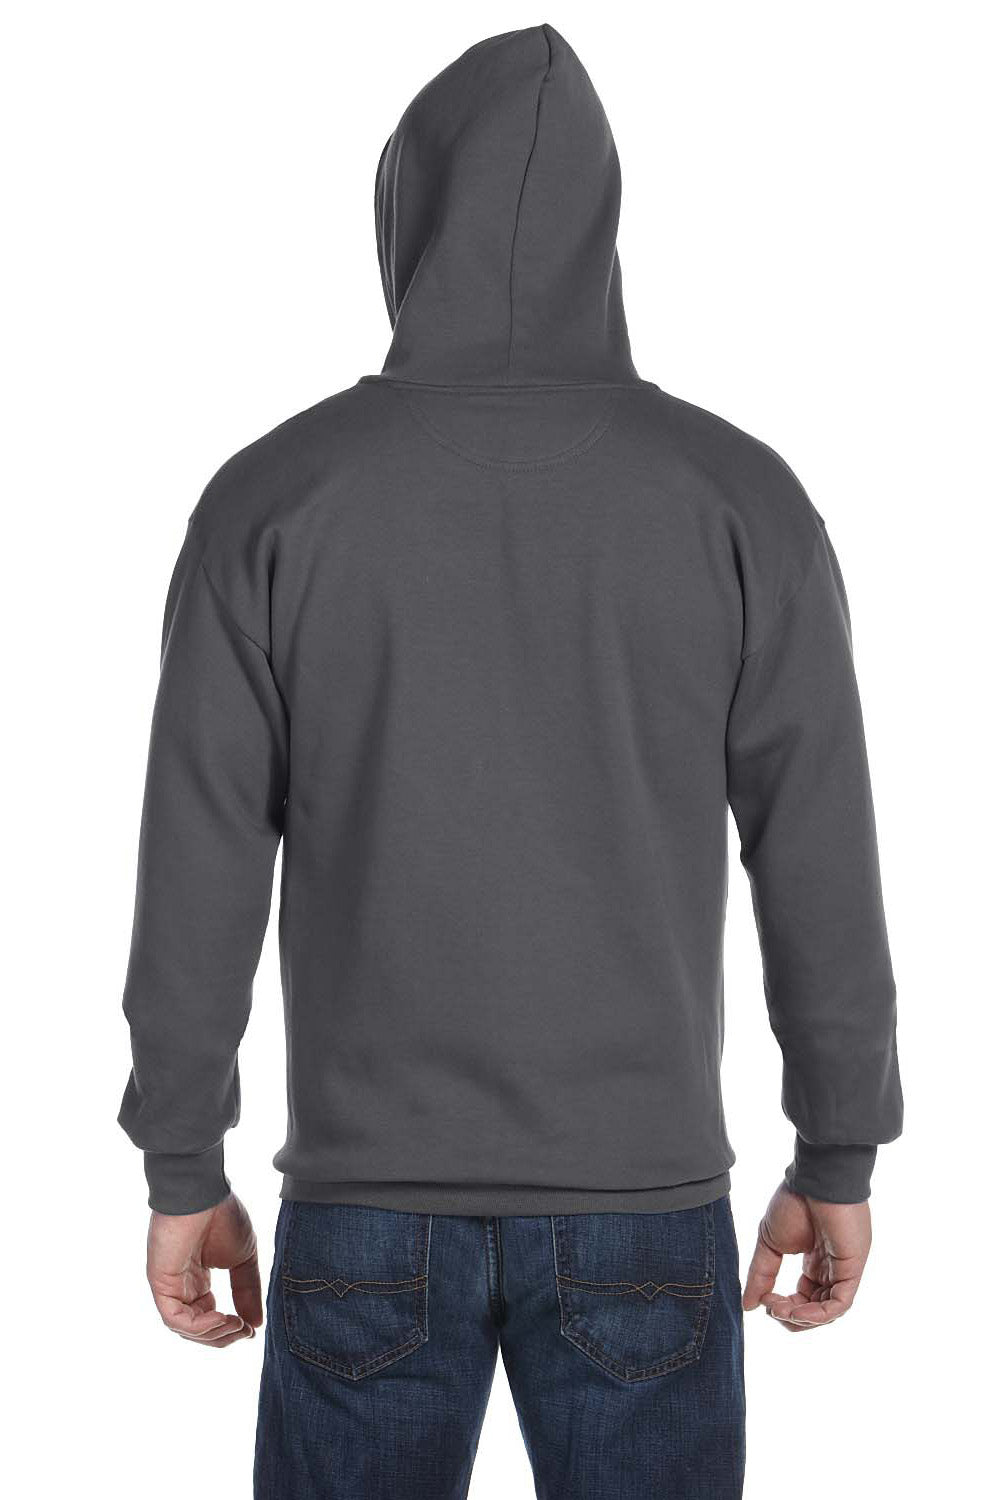 Anvil 71600 Mens Fleece Full Zip Hooded Sweatshirt Hoodie Charcoal Grey Back